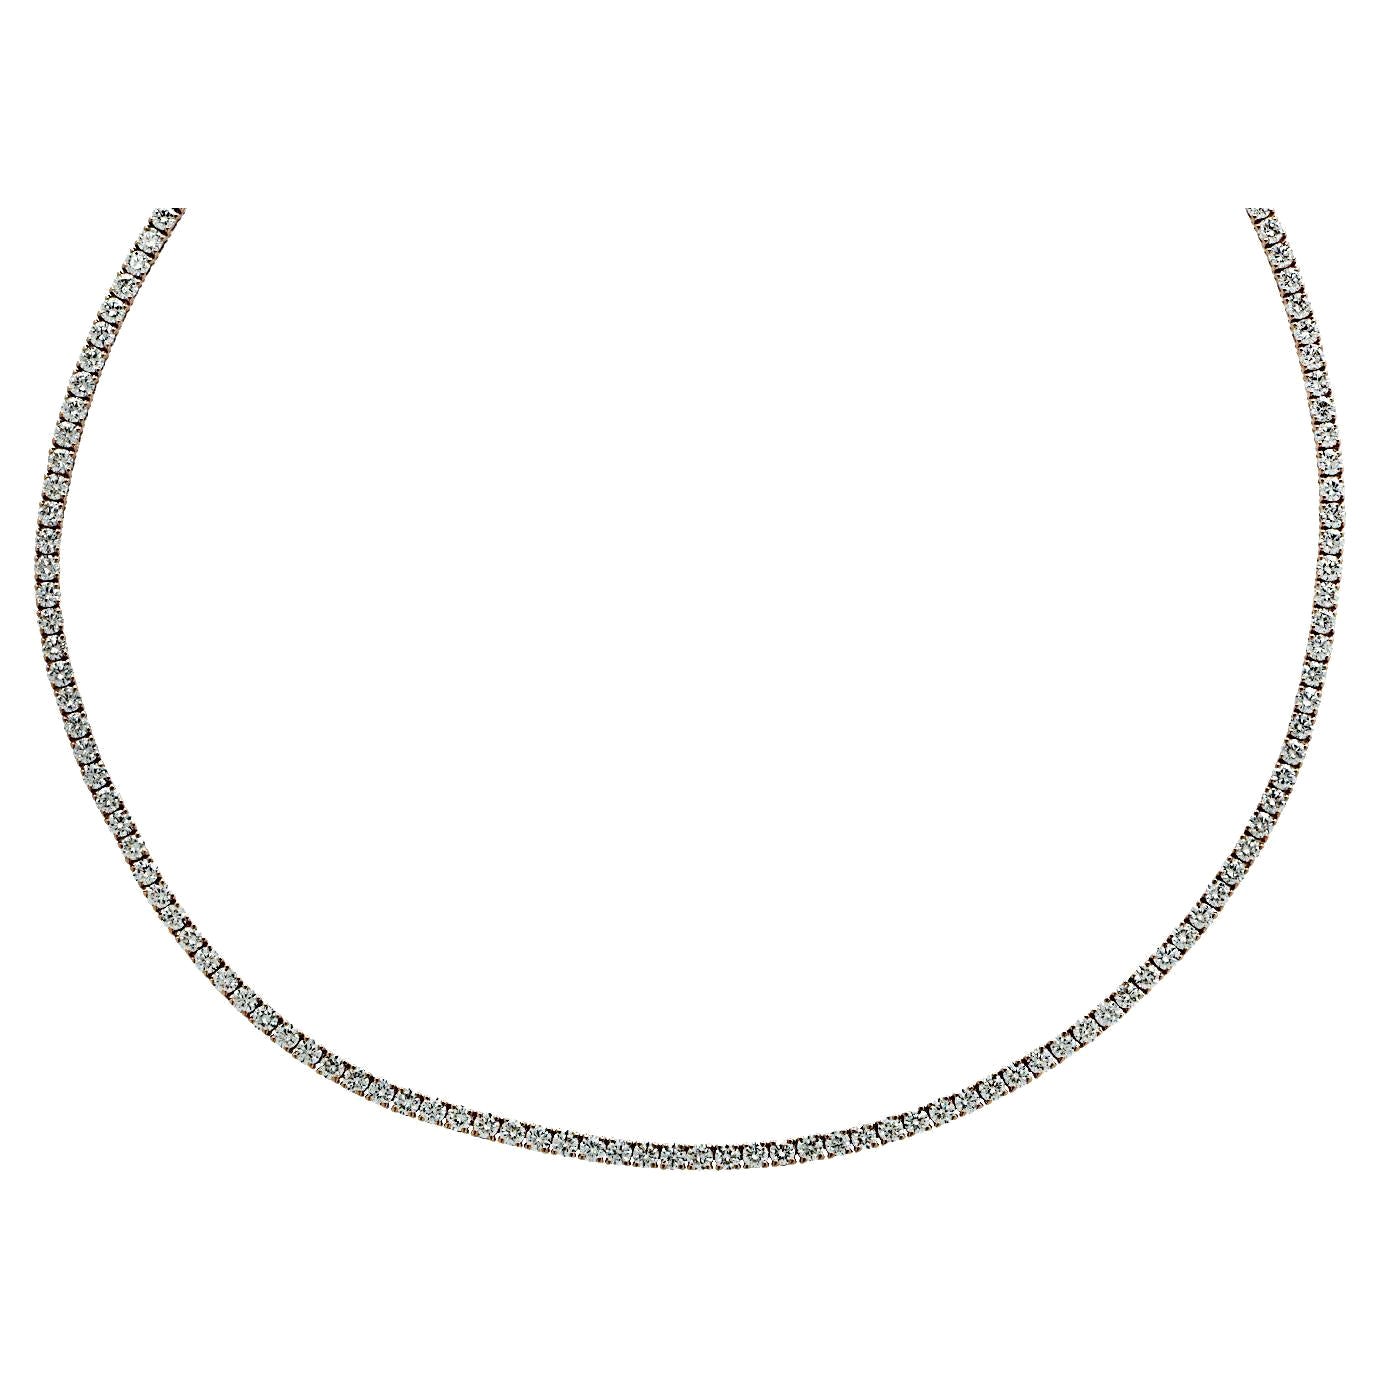 Halskette aus Roségold mit lebhaften 5,96 Karat Diamanten in gerader Linie